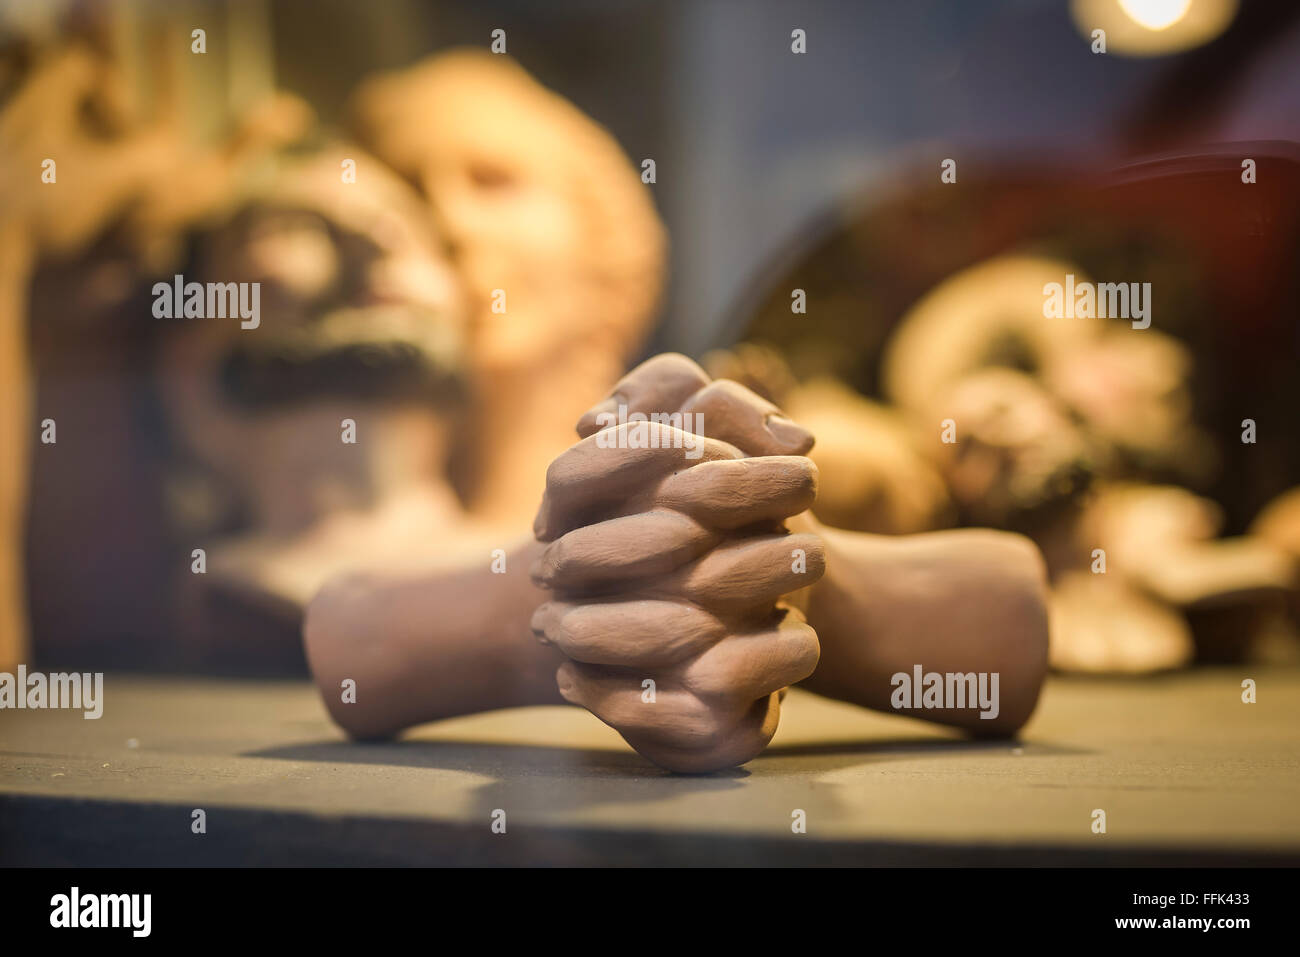 Mani preghiera, vista di un paio di mani di terracotta agganciate come in preghiera, come parte di una mostra in una vetrina di scultori a Napoli. Foto Stock